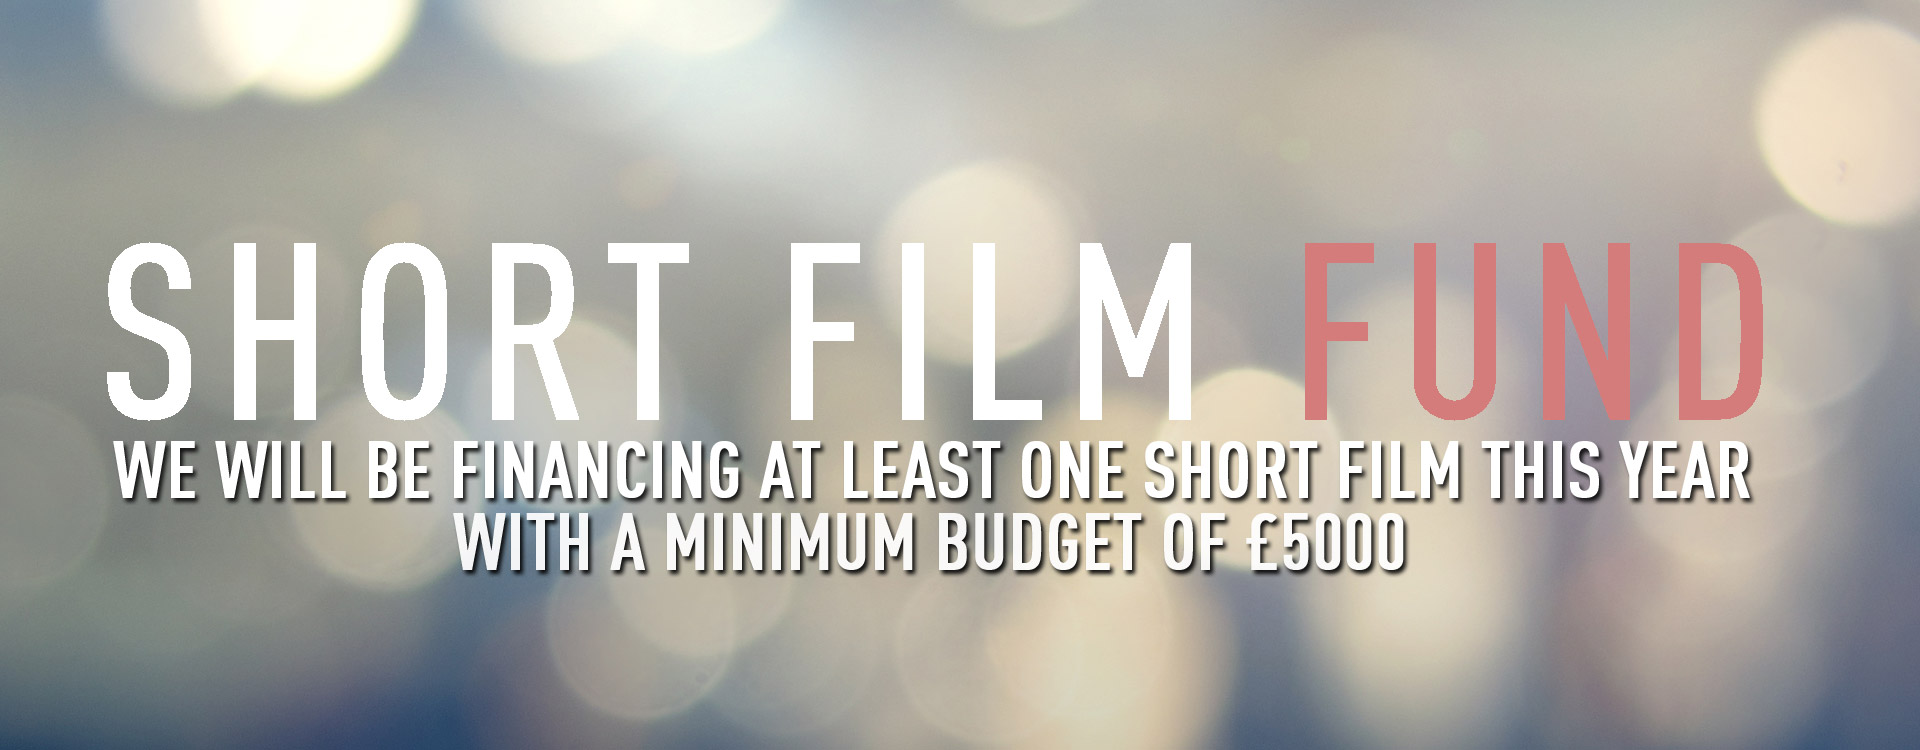 Shore Scripts Script Fund - Film Shortage Special